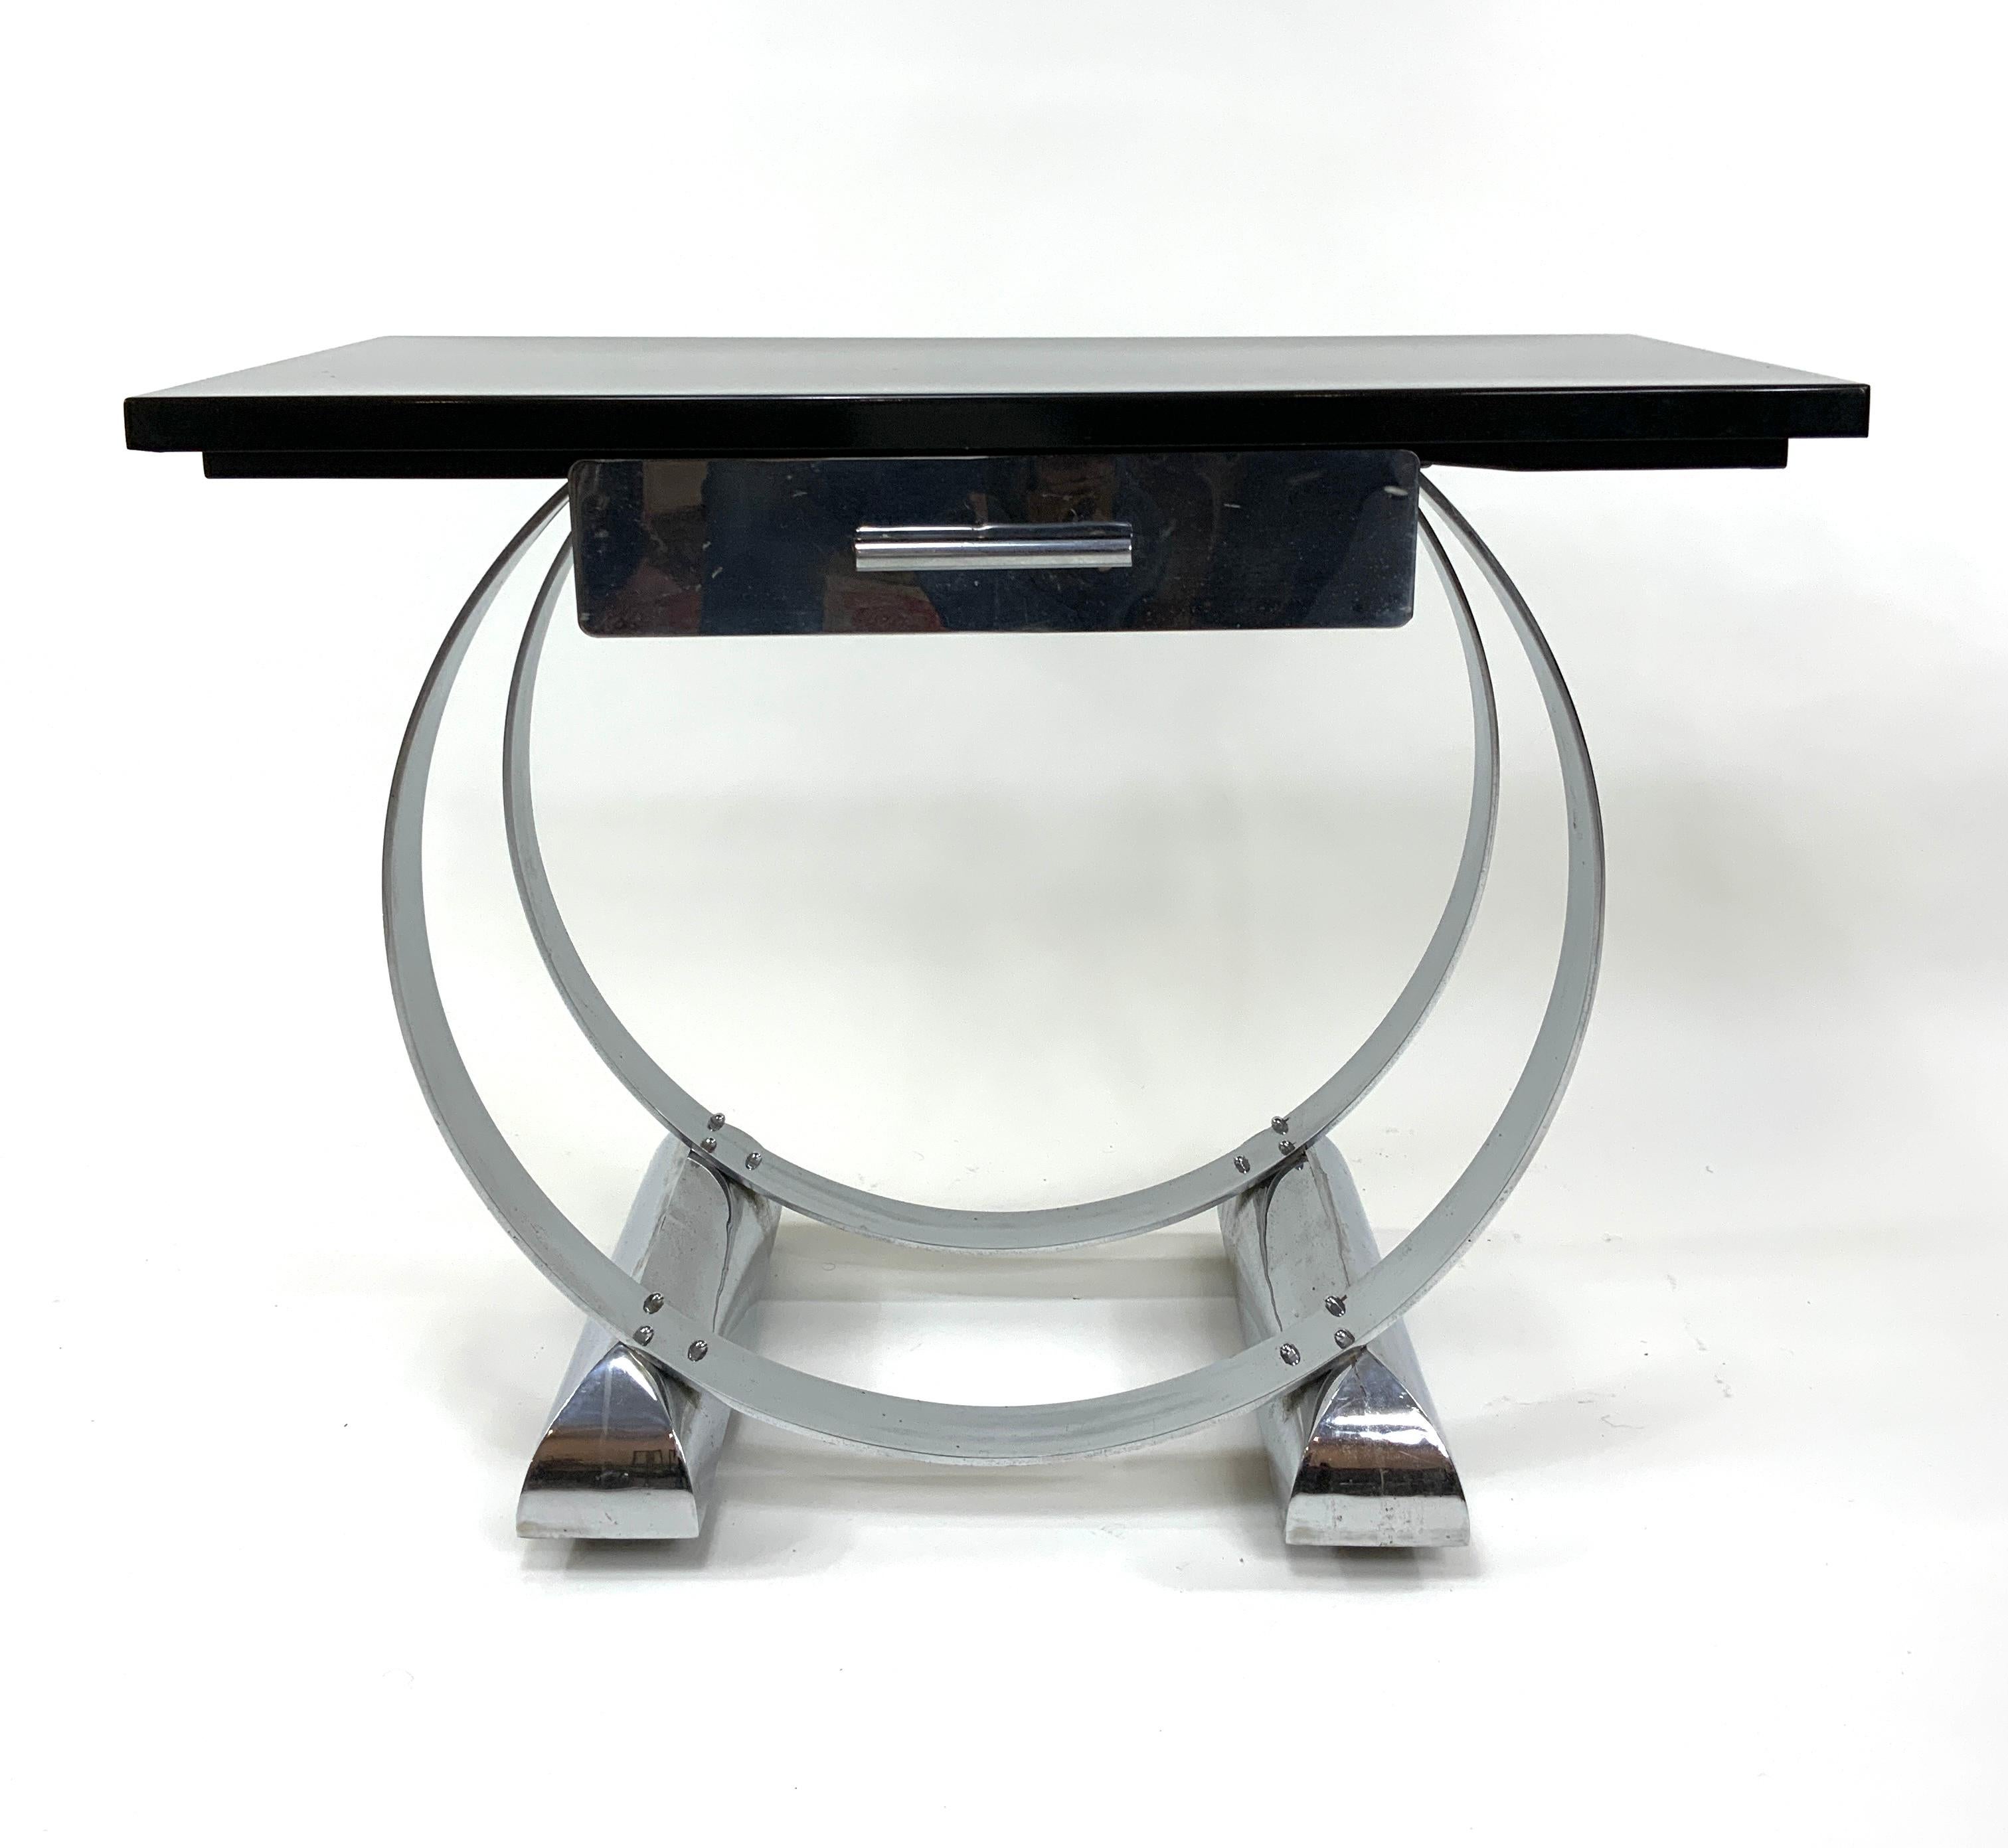 Magnifique table console Art déco dans le style de Donald Deskey, comprenant deux barres circulaires concentriques en fer plat chromé montées sur deux bases en métal chromé de forme inhabituelle et splendide. Ces derniers dissimulent des roulettes